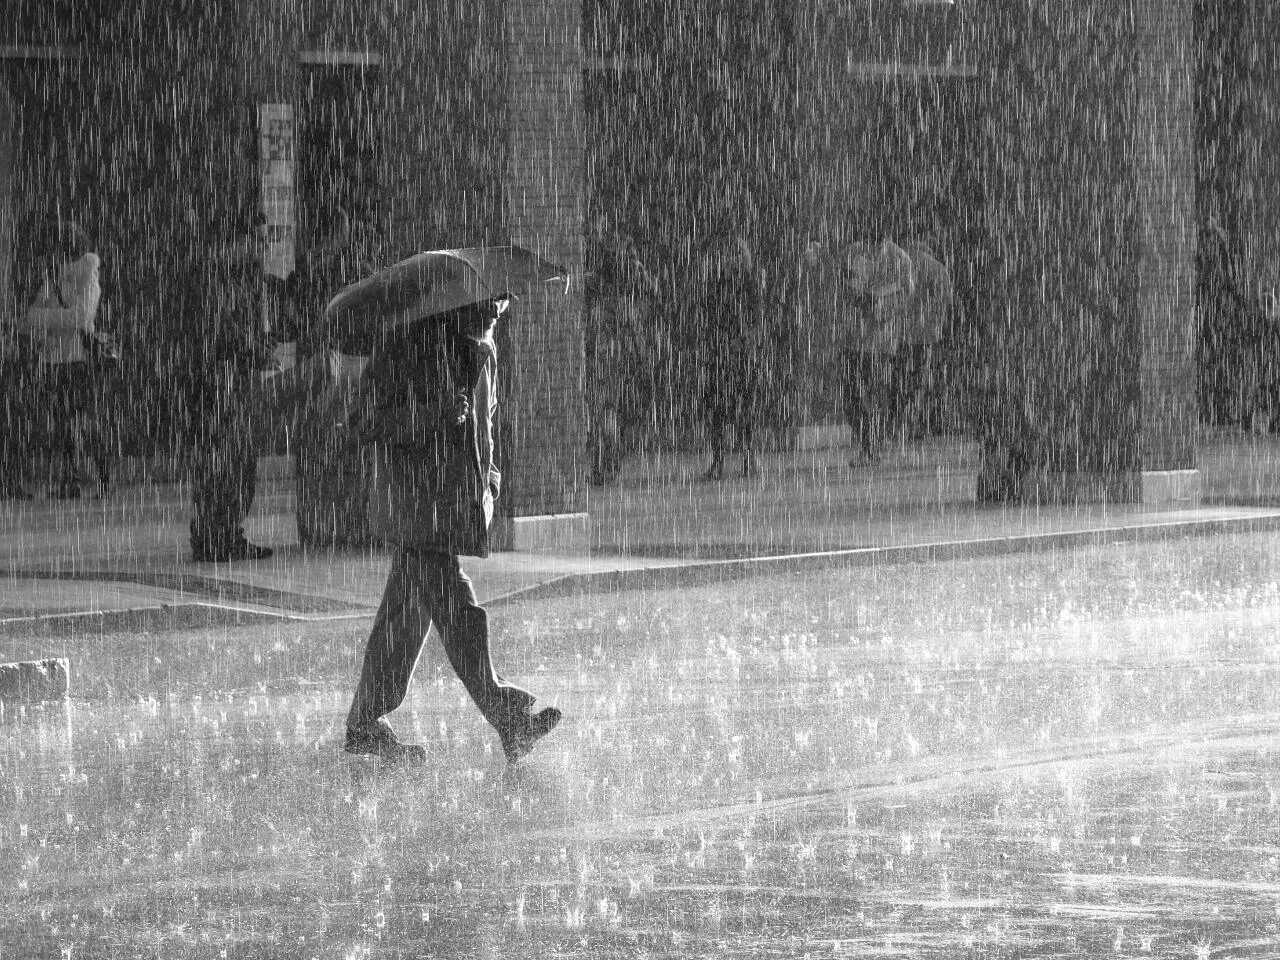 Песни хороводит снег с дождем. Человек под дождем. Дождь. Идет под дождем. Человек идет под дождем.